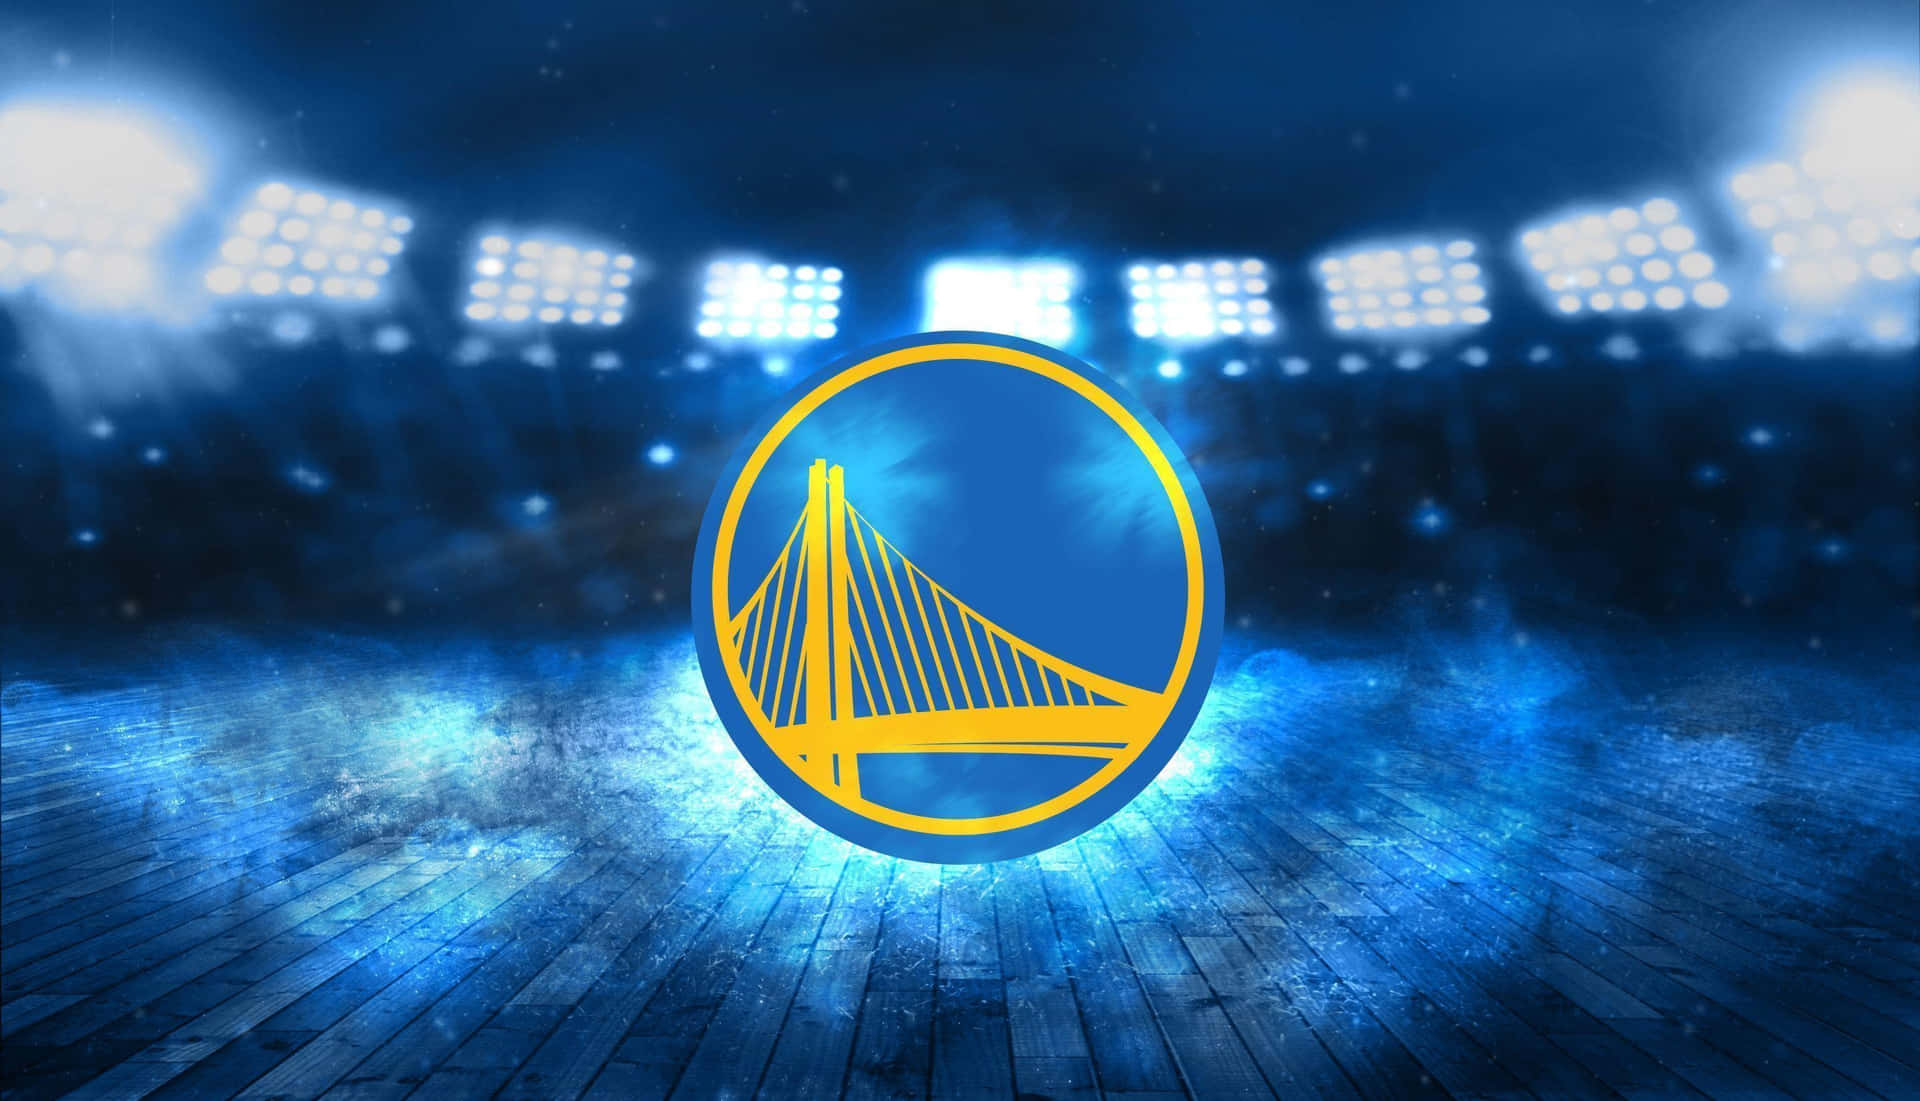 Golden State Warriors Basketball Court Logo Wallpaper